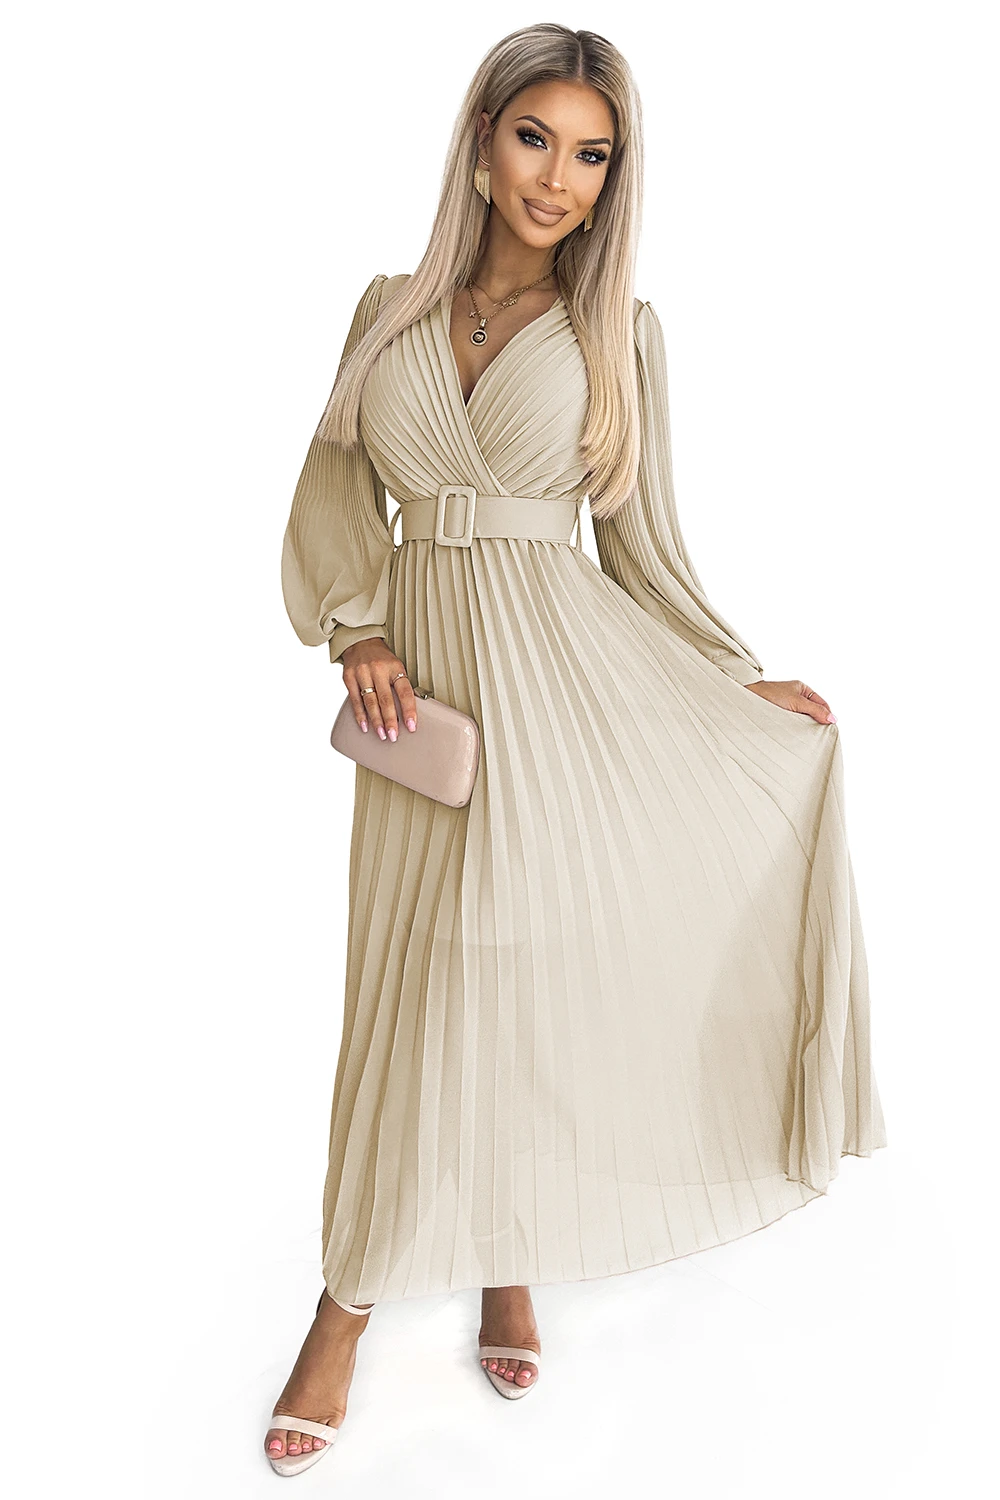 414-8 KLARA plisowana sukienka z paskiem i dekoltem - BEŻOWA